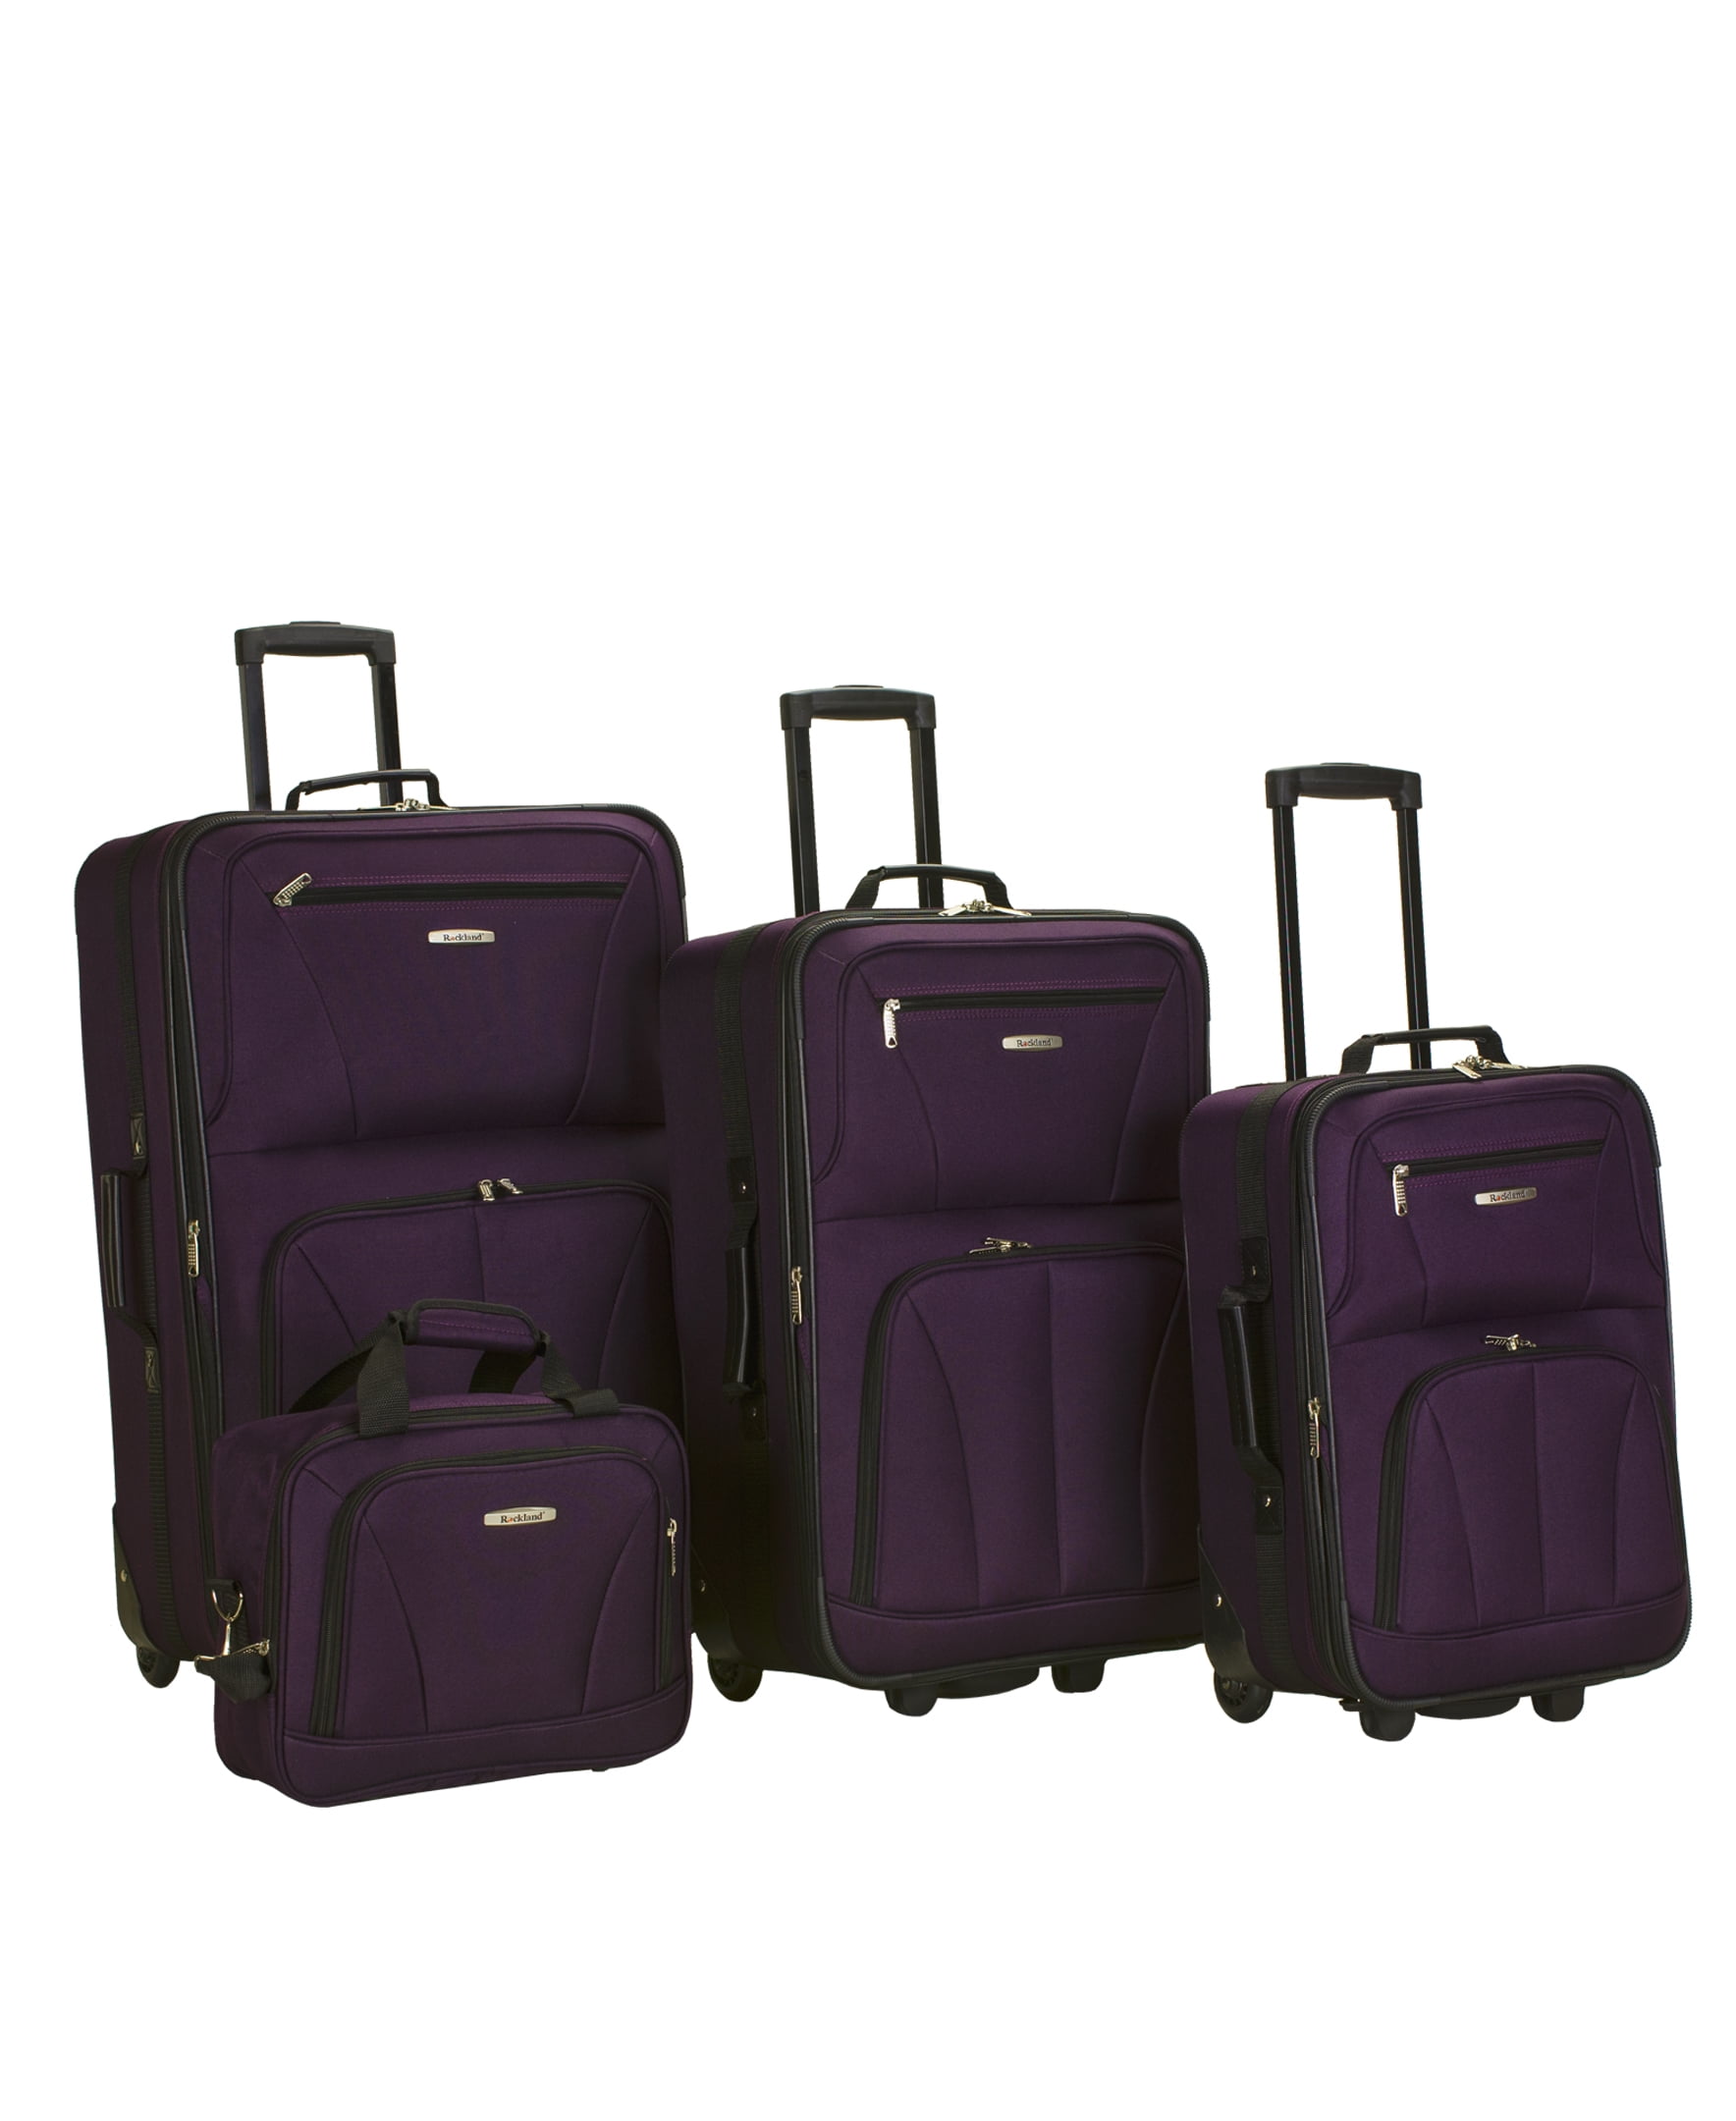 Rockland Luggage Journey 4 Piece Softside Expandable Luggage Set F32 ...